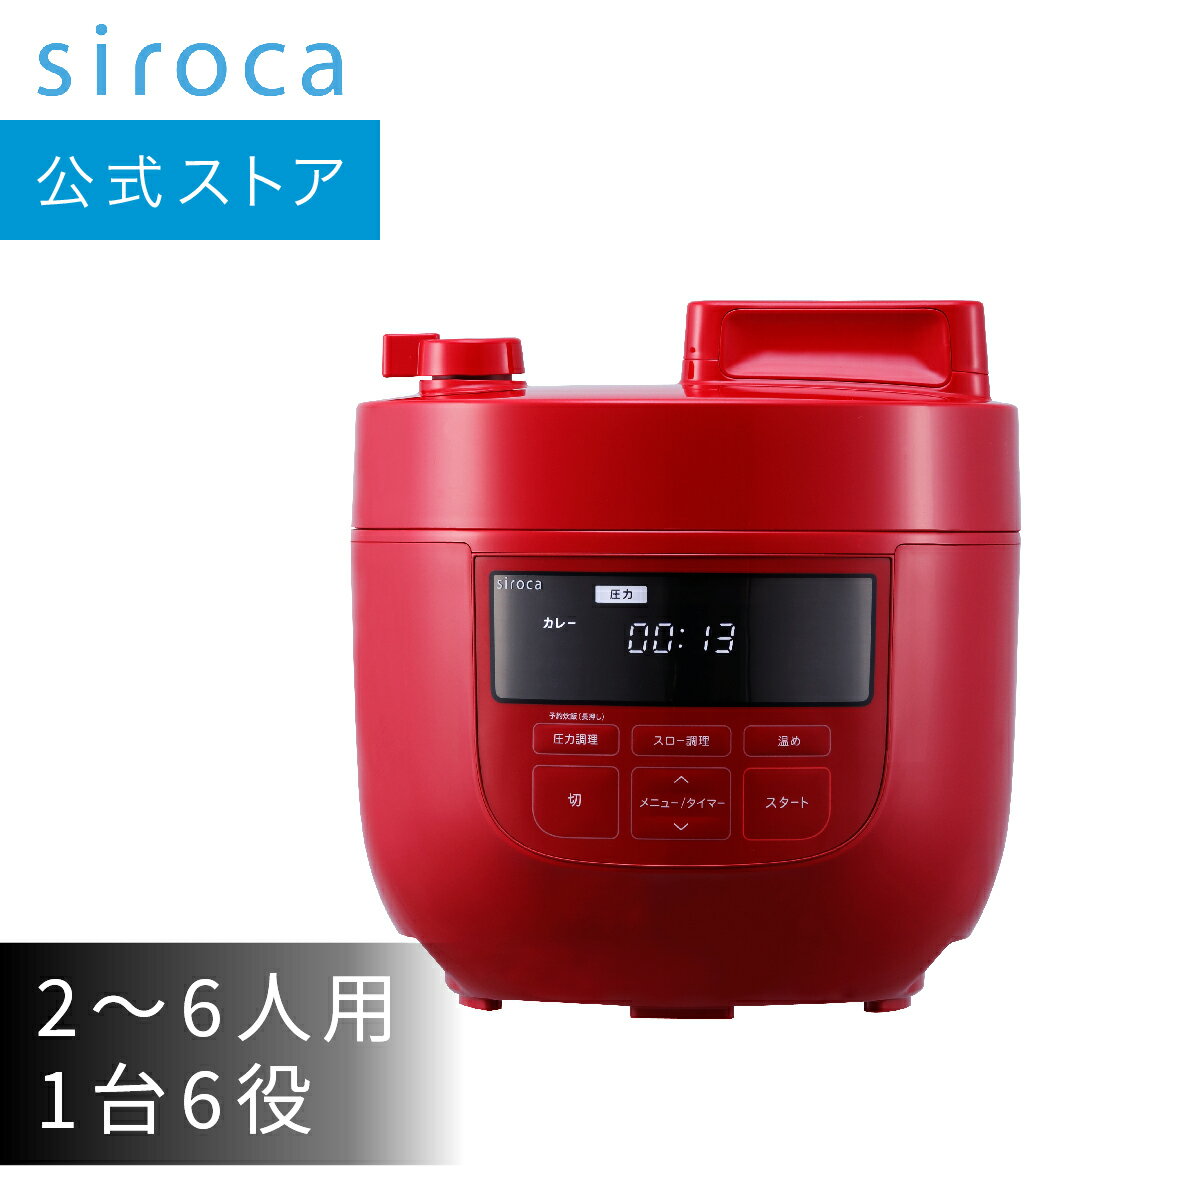 【シロカ公式】電気圧力鍋 SP-4D151 